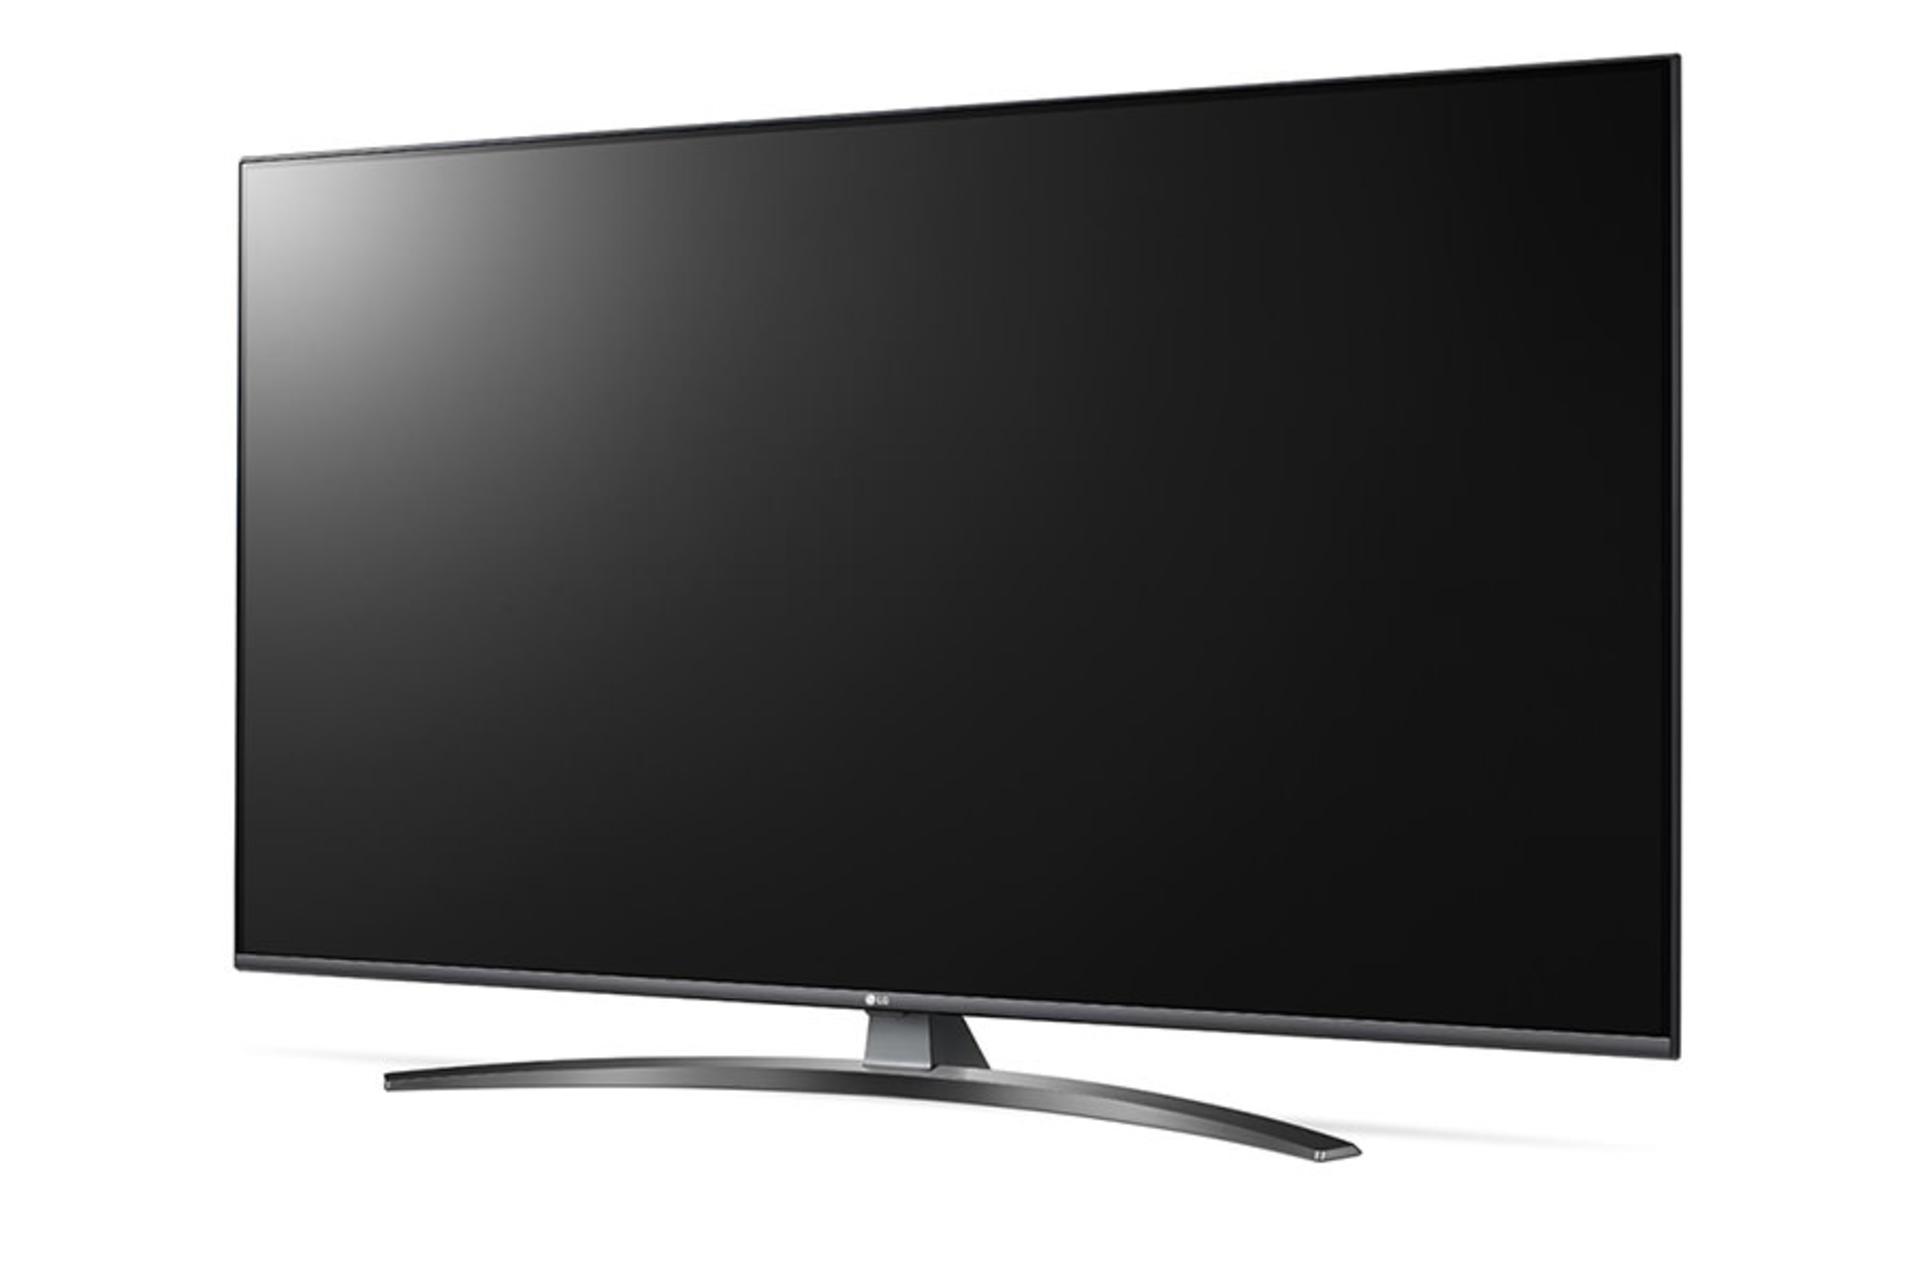 نمای نیمرخ تلویزیون ال جی UM7660 مدل 55 اینچ با صفحه خاموش / LG 55UM7660